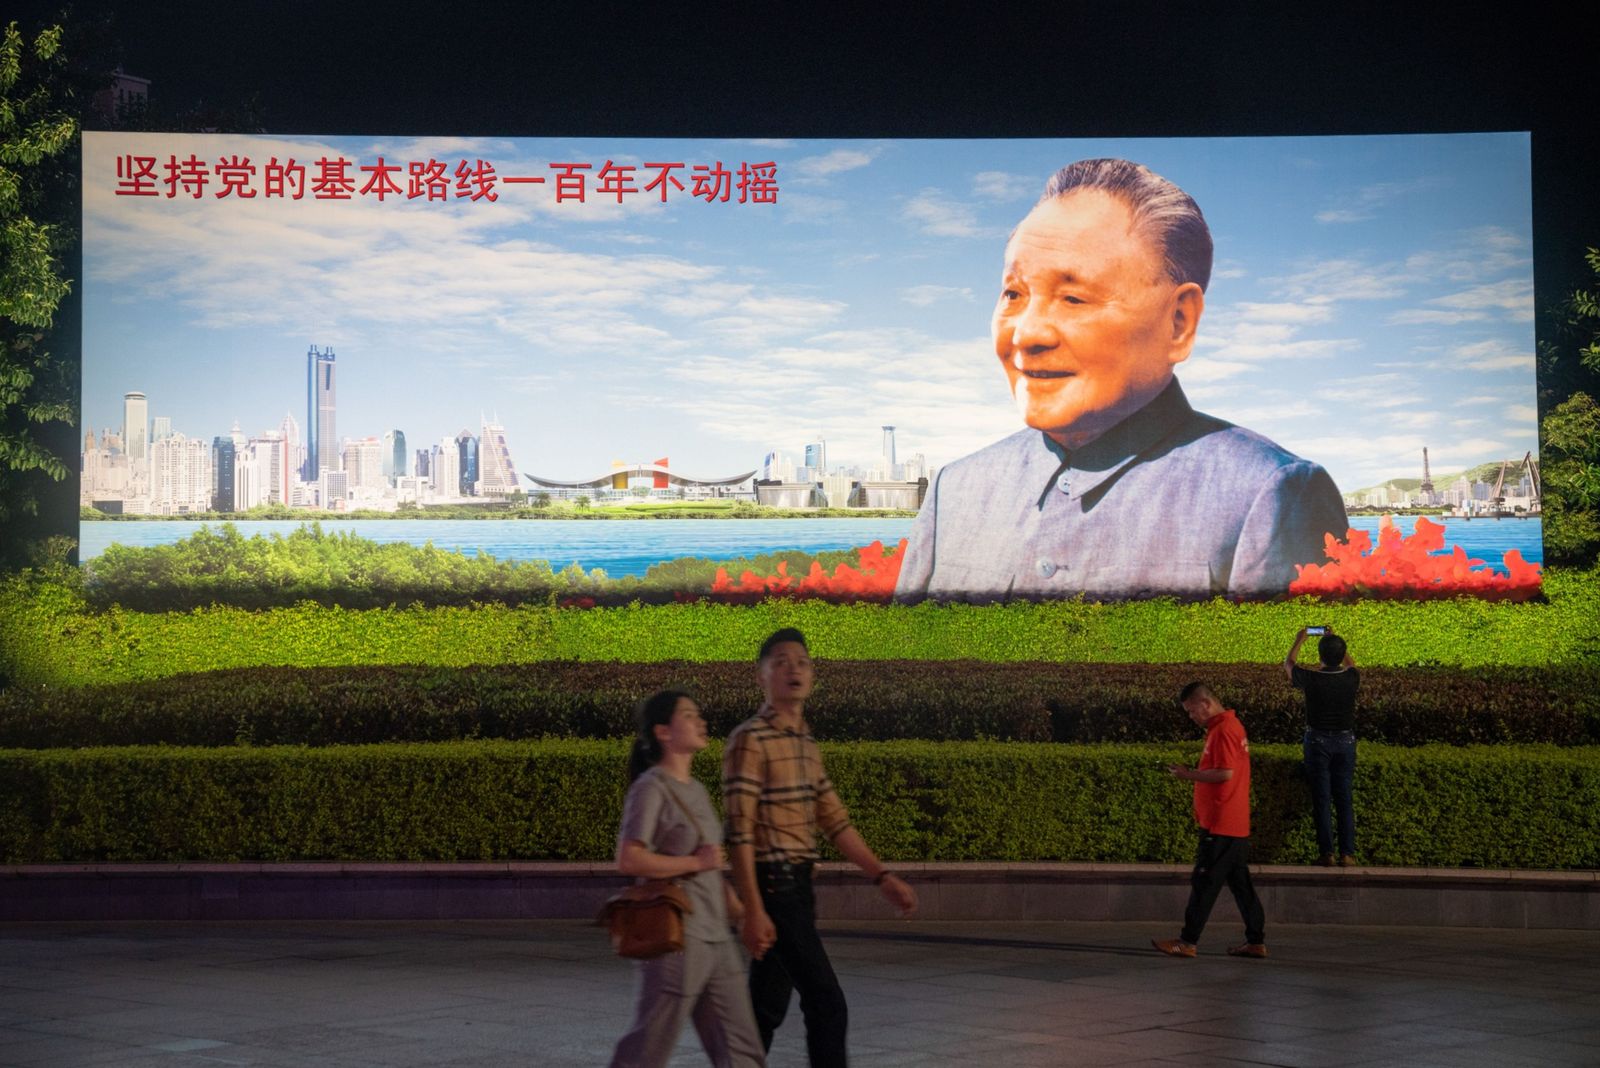 يسيرون أمام صورة للزعيم الصيني الراحل دينغ شياو بينغ في شينزن - 19 نوفمبر 2020 - Bloomberg